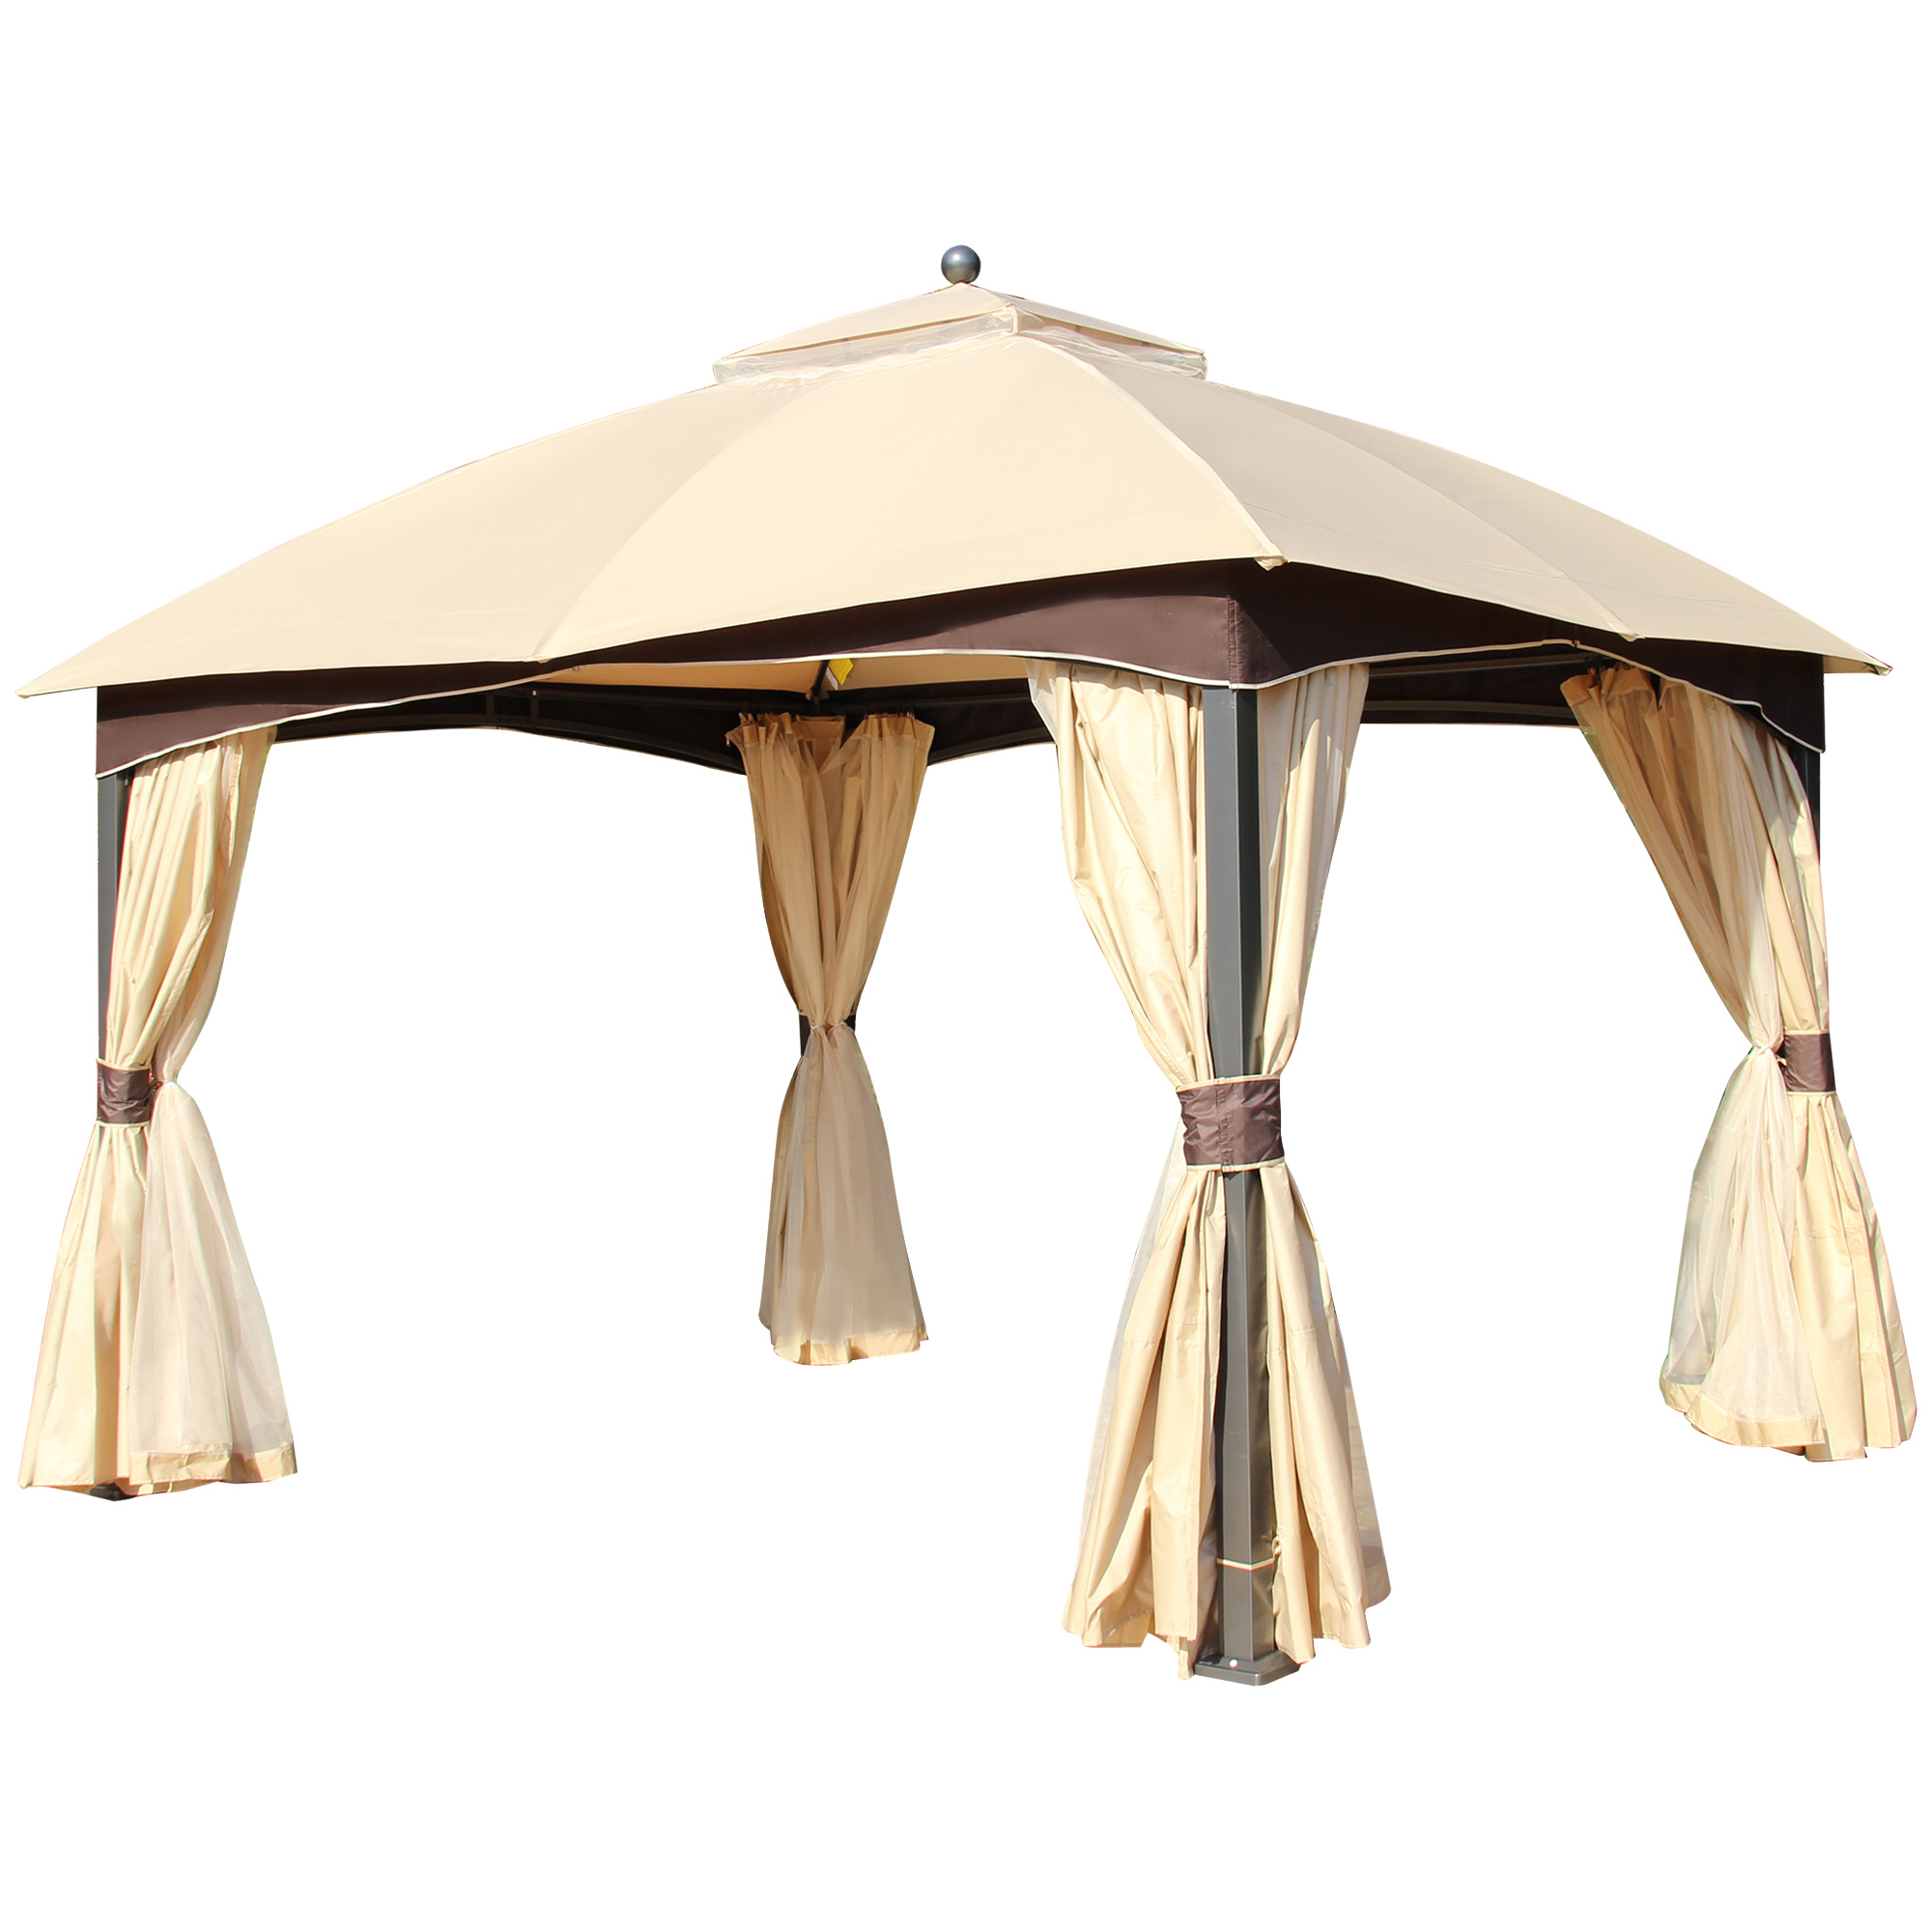 Sunny Tent stormvast lamellendak paviljoens zijwanden vouwtent schuifdak luifel hardtop plat paviljoen luifels buiten tuintenten parasols paviljoens vouwpaviljoen